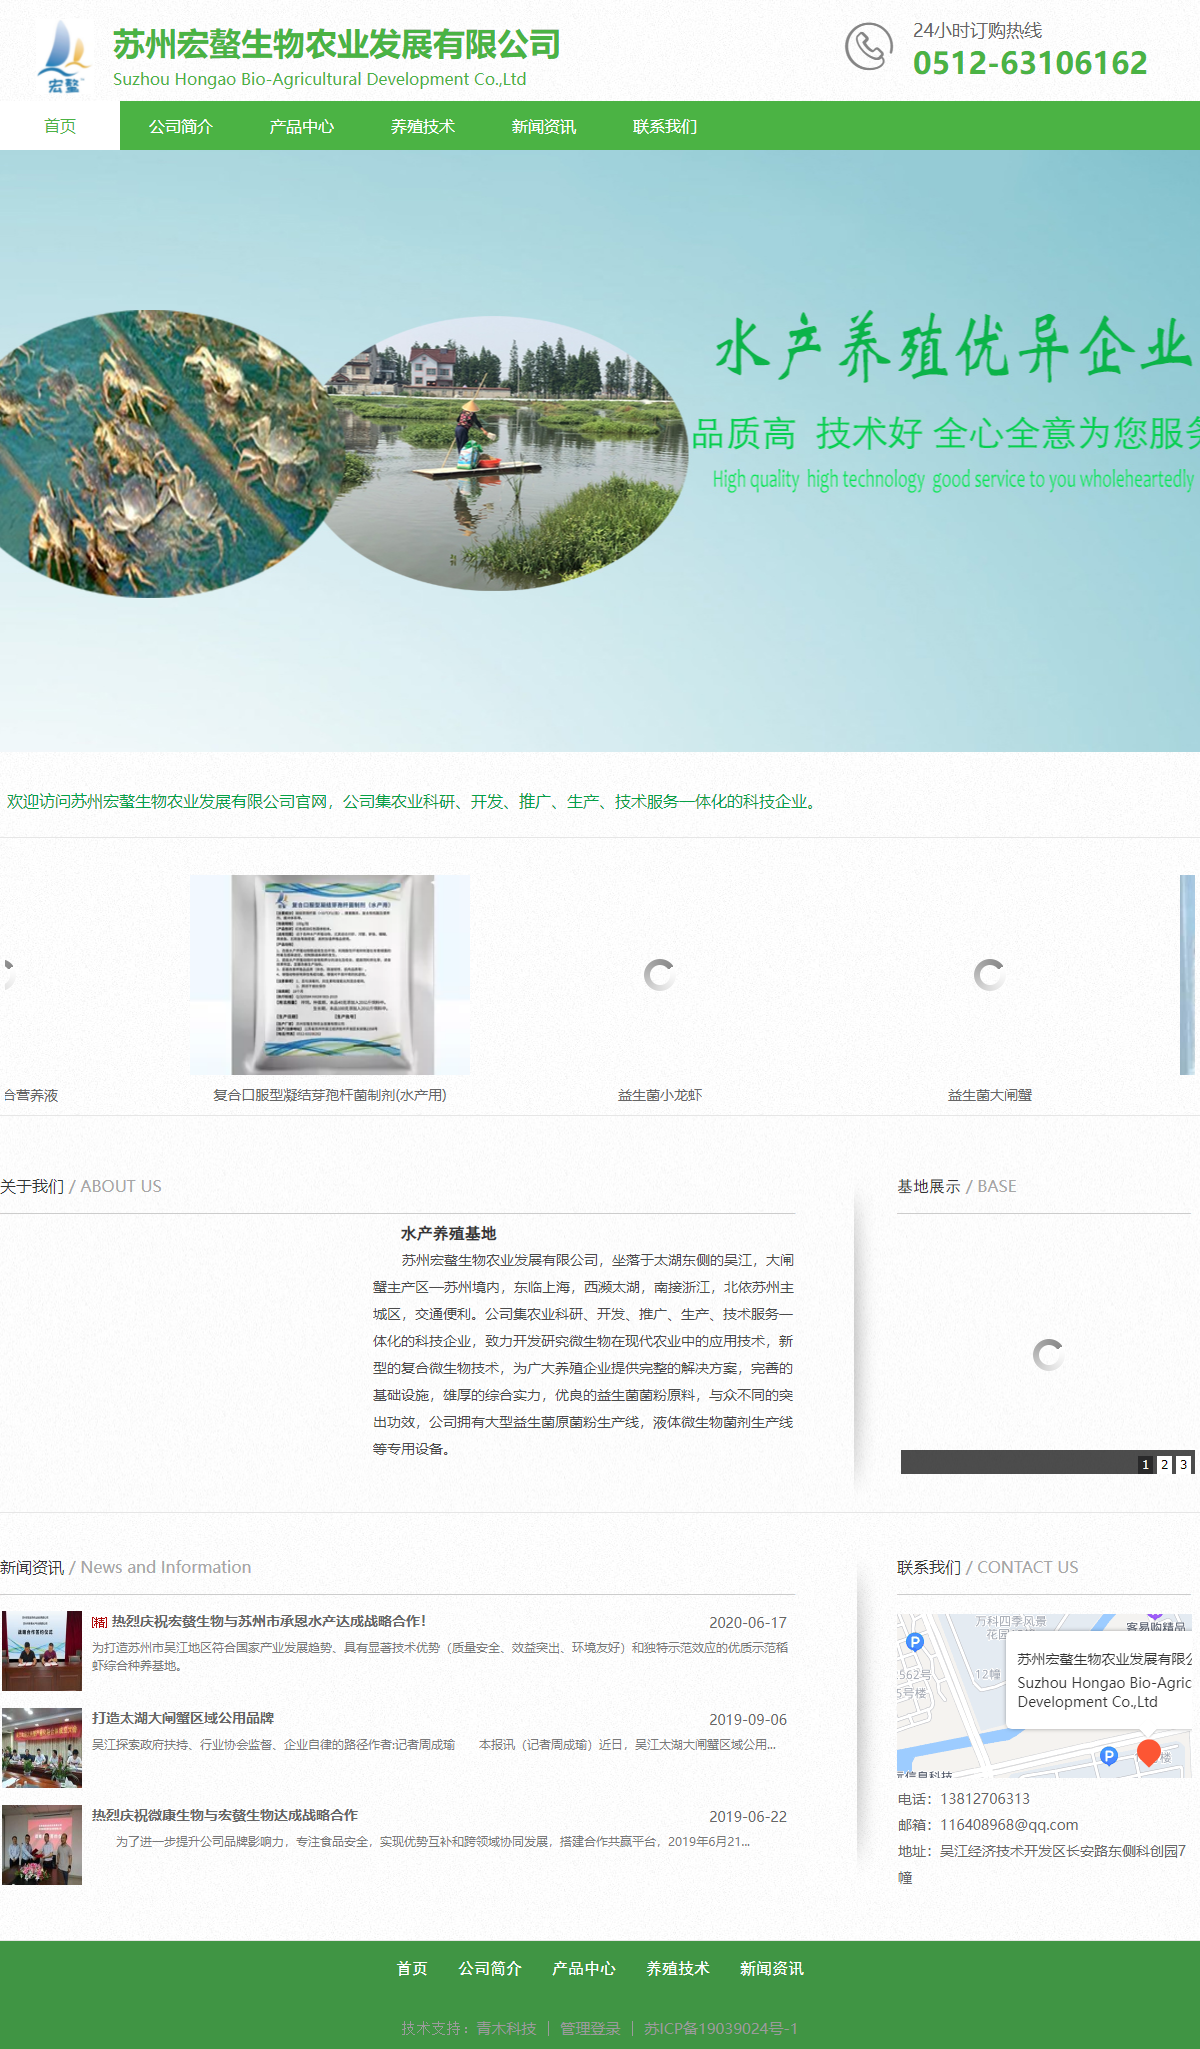 苏州宏螯生物农业发展有限公司网站案例